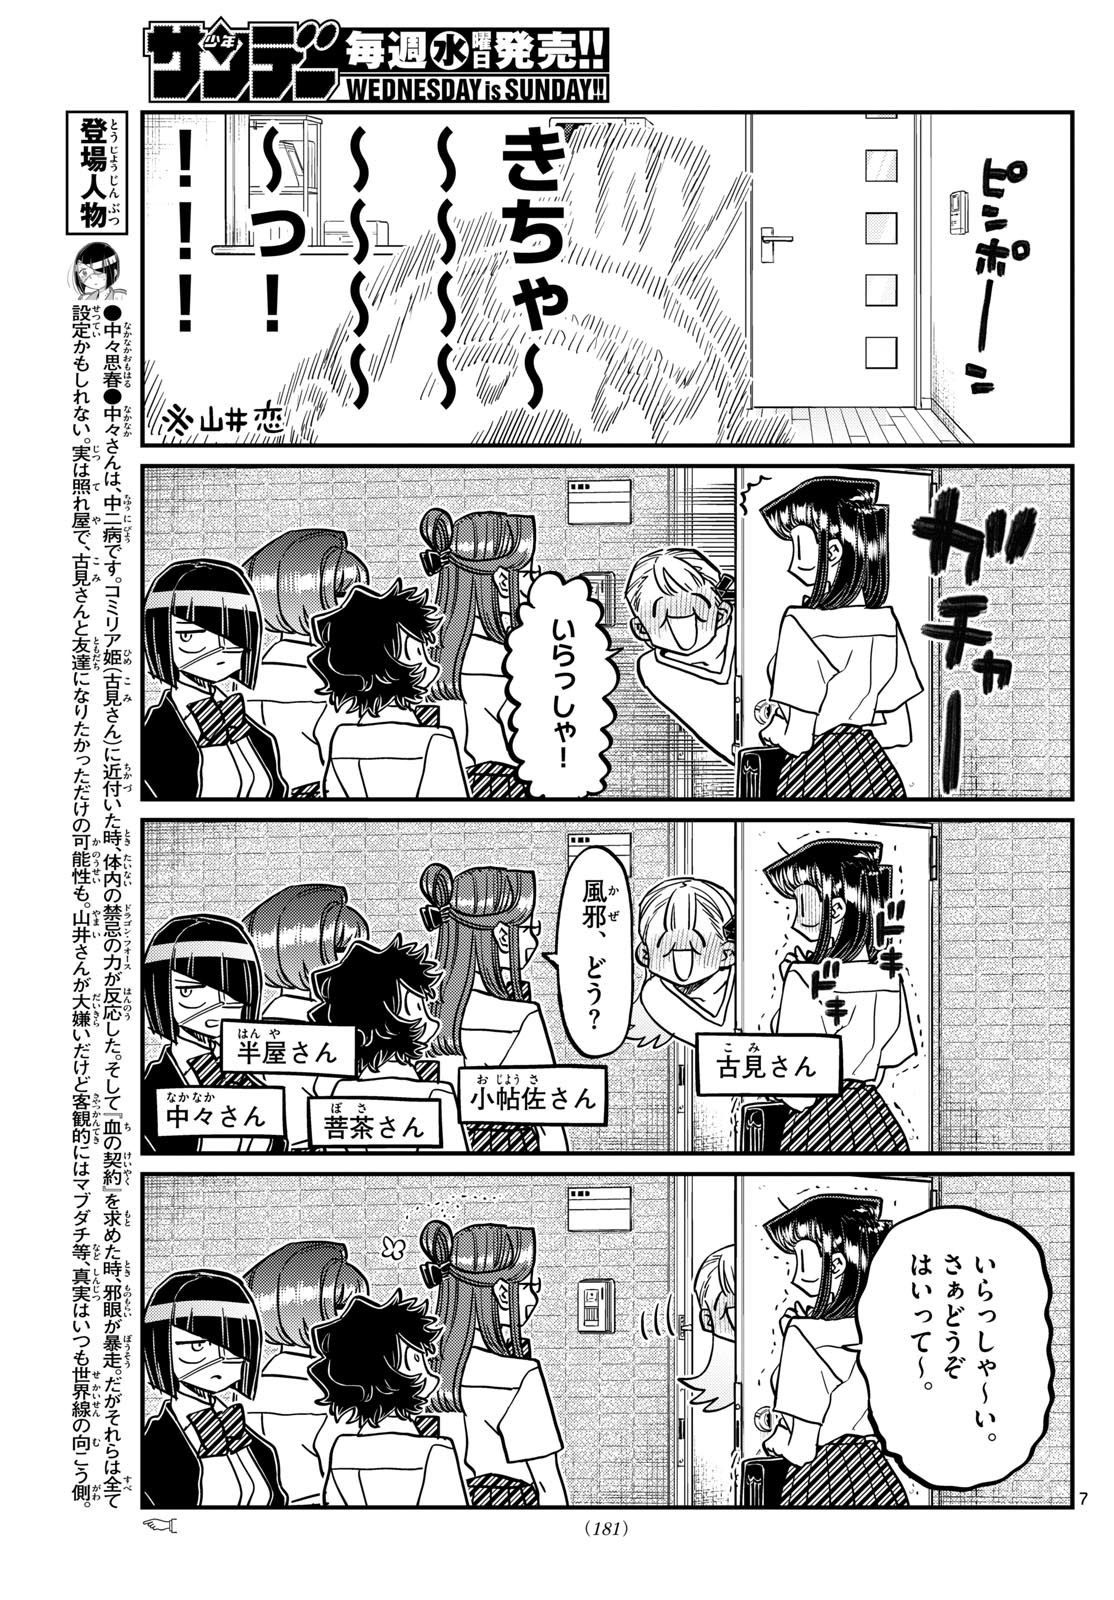 Komi-san wa, Comyushou desu. Capítulo 419 - Manga Online